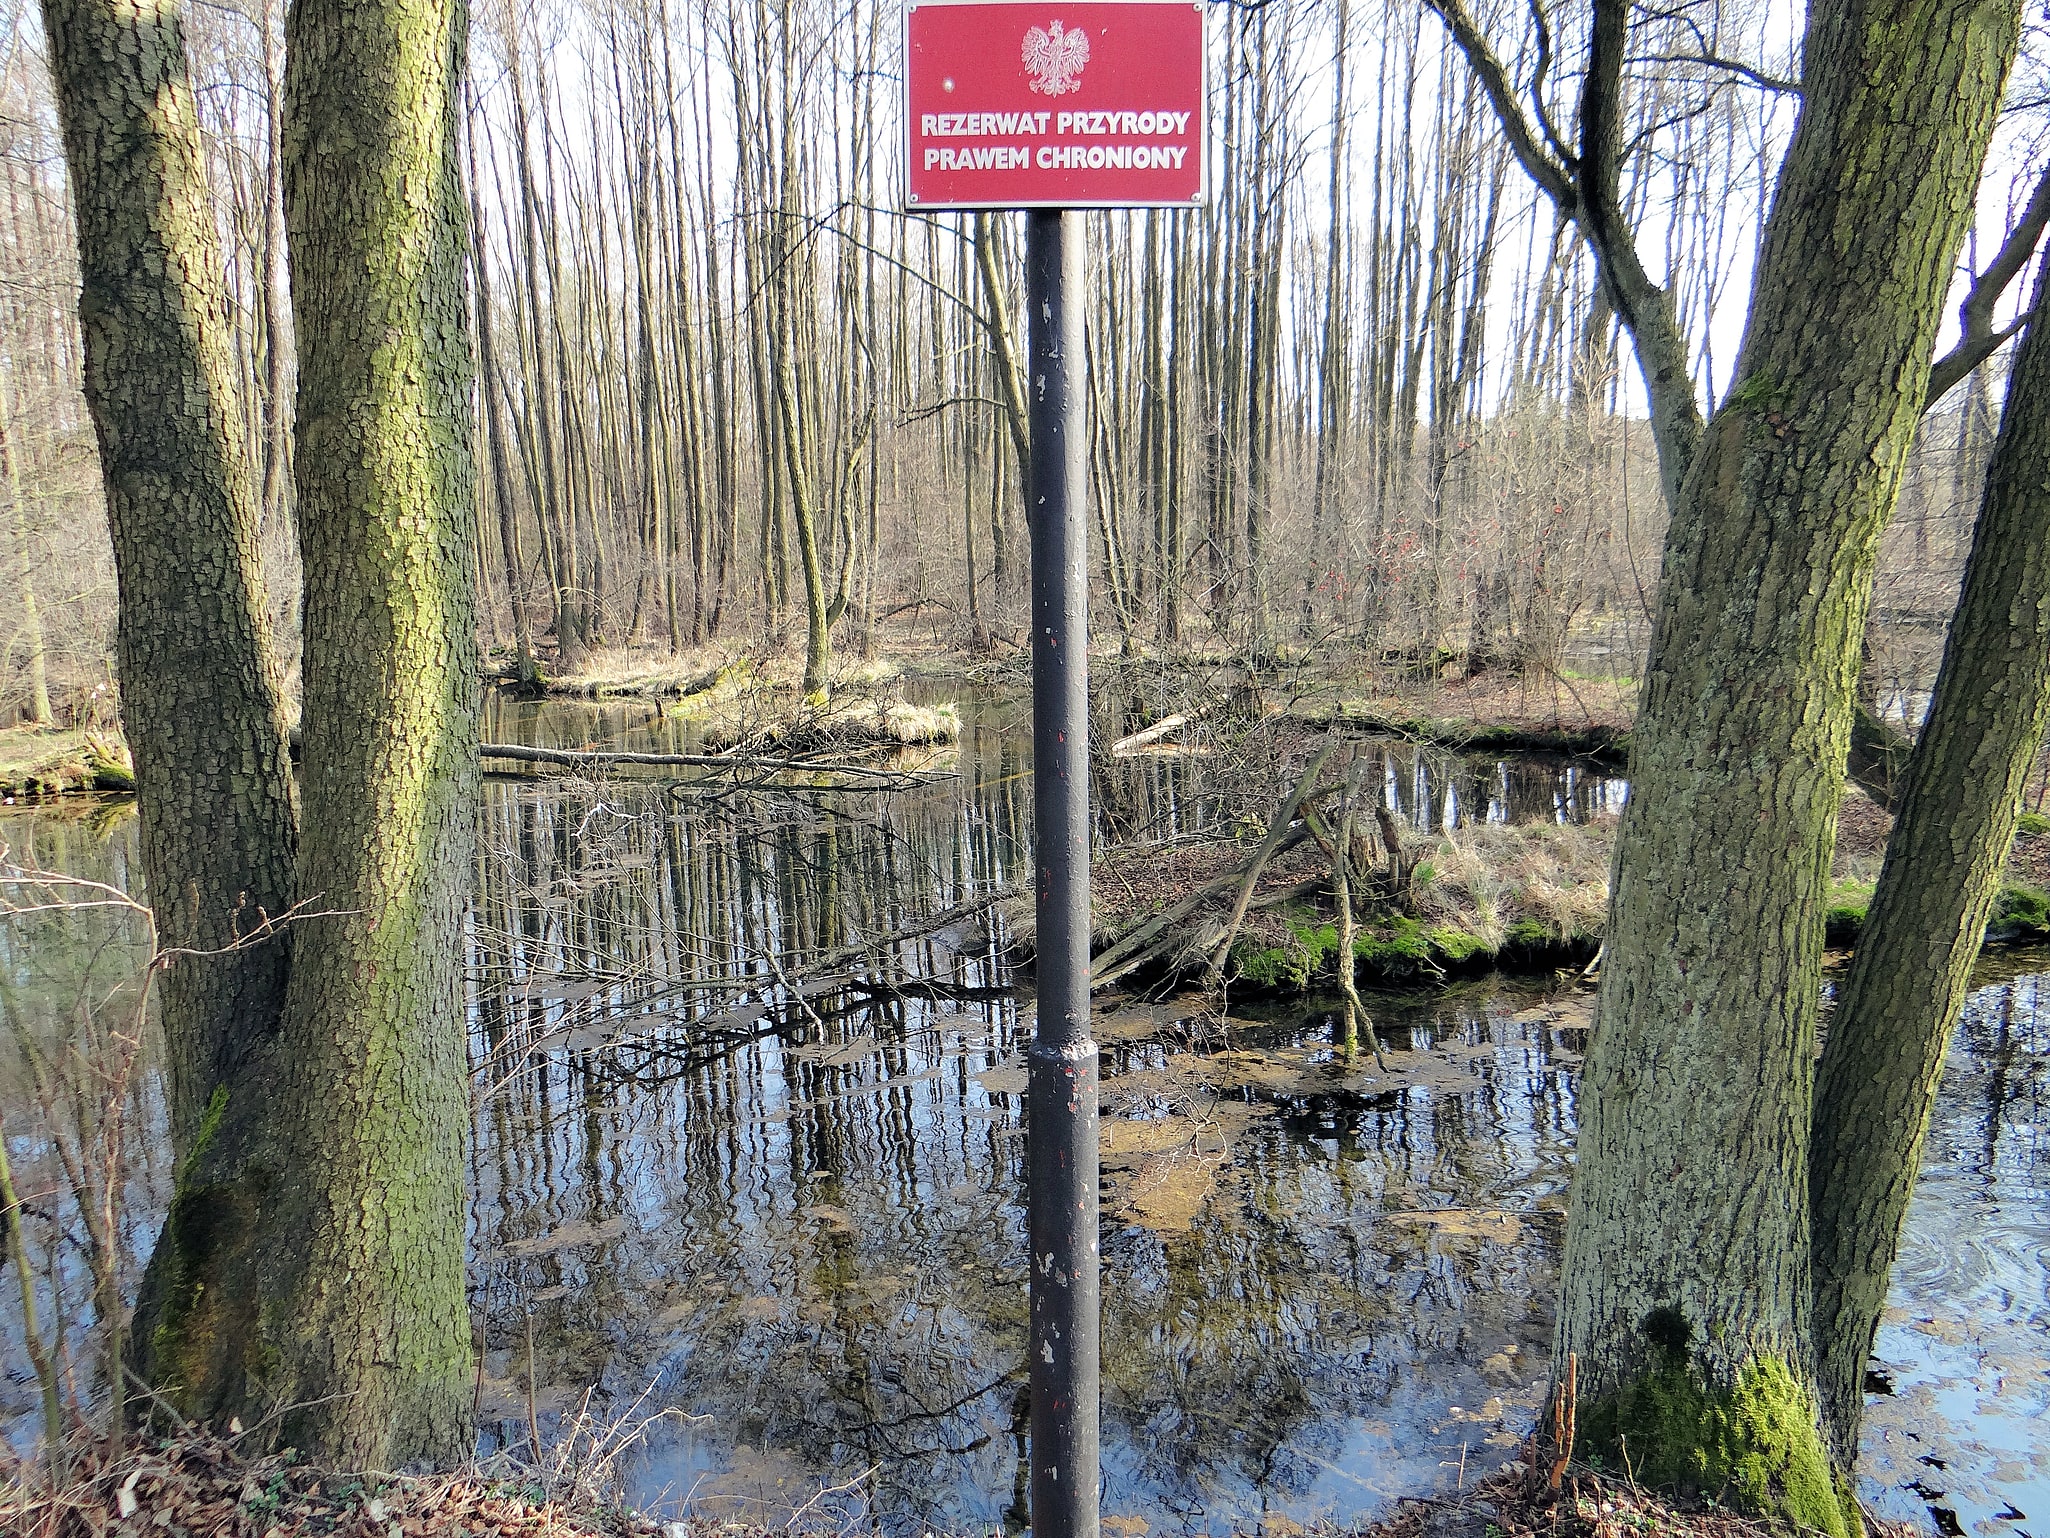 Niebieskie Źródła Nature Reserve, Polen